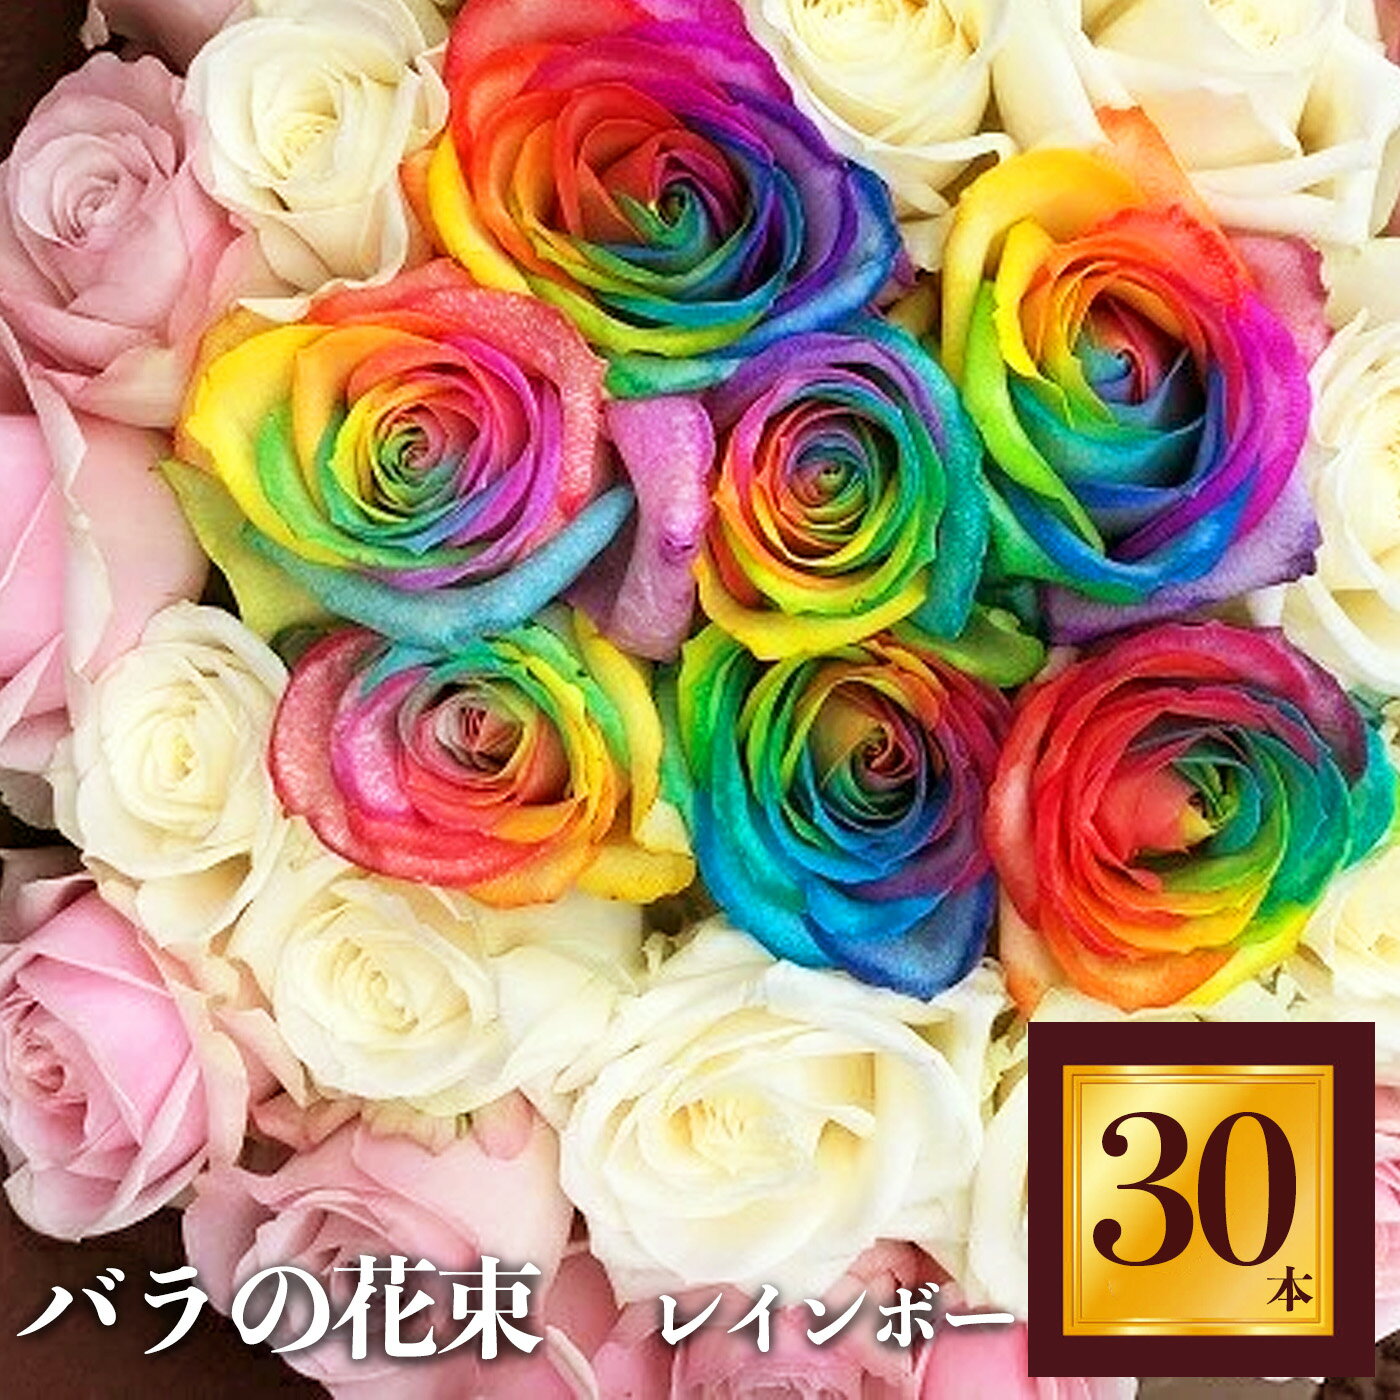 13位! 口コミ数「0件」評価「0」Heguri Rose バラの花束 30本（レインボー7本+白+淡いピンク）ローズ フラワー 薔薇 新鮮 高品質 綺麗 平群のバラ 花束 平･･･ 